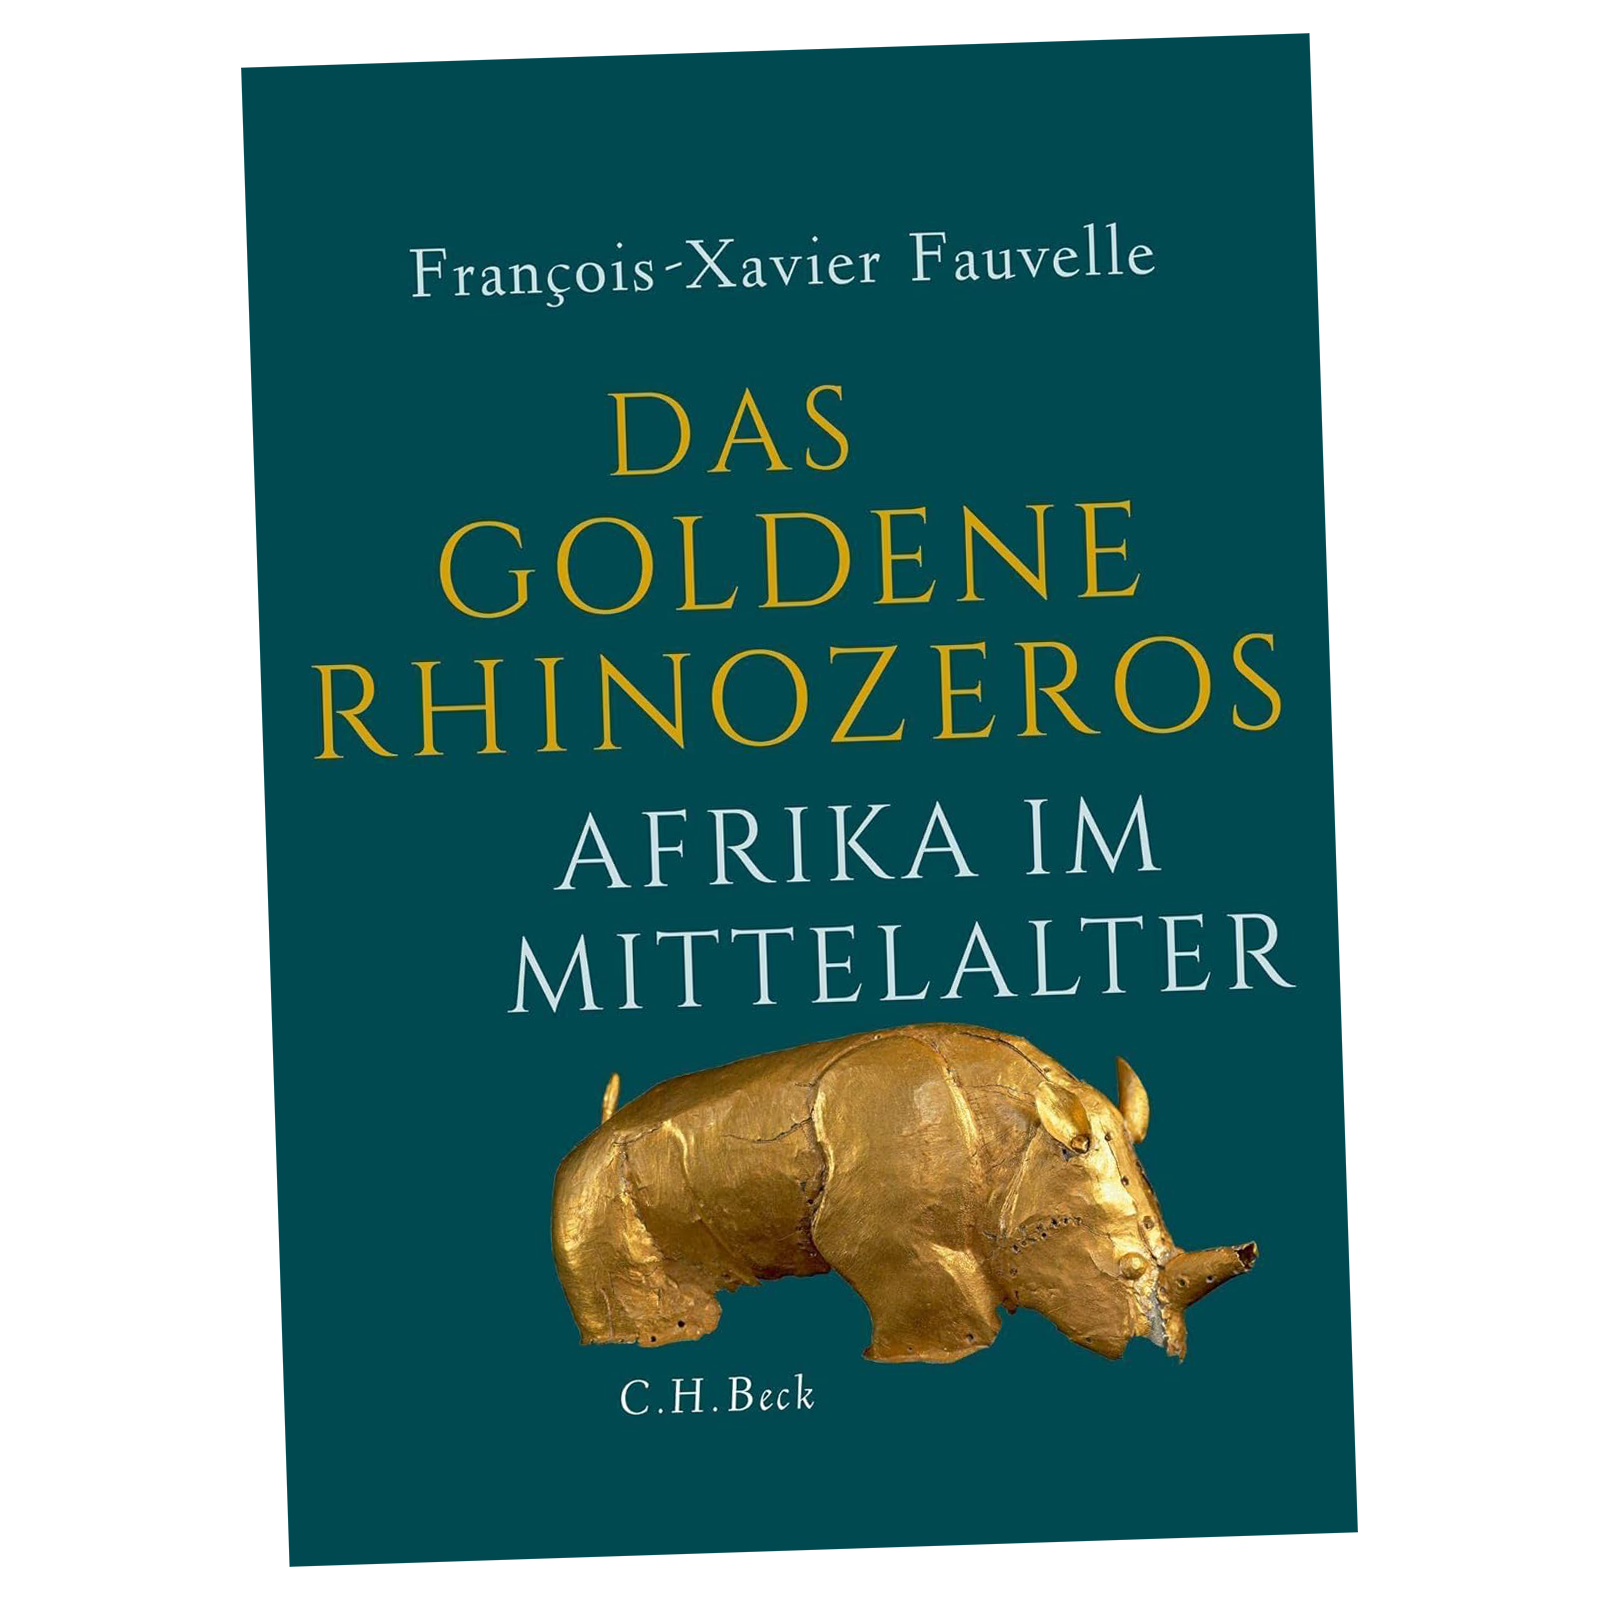 Das goldene Rhinozeros: Afrika im Mittelalter, von Fauvelle, François-Xavier